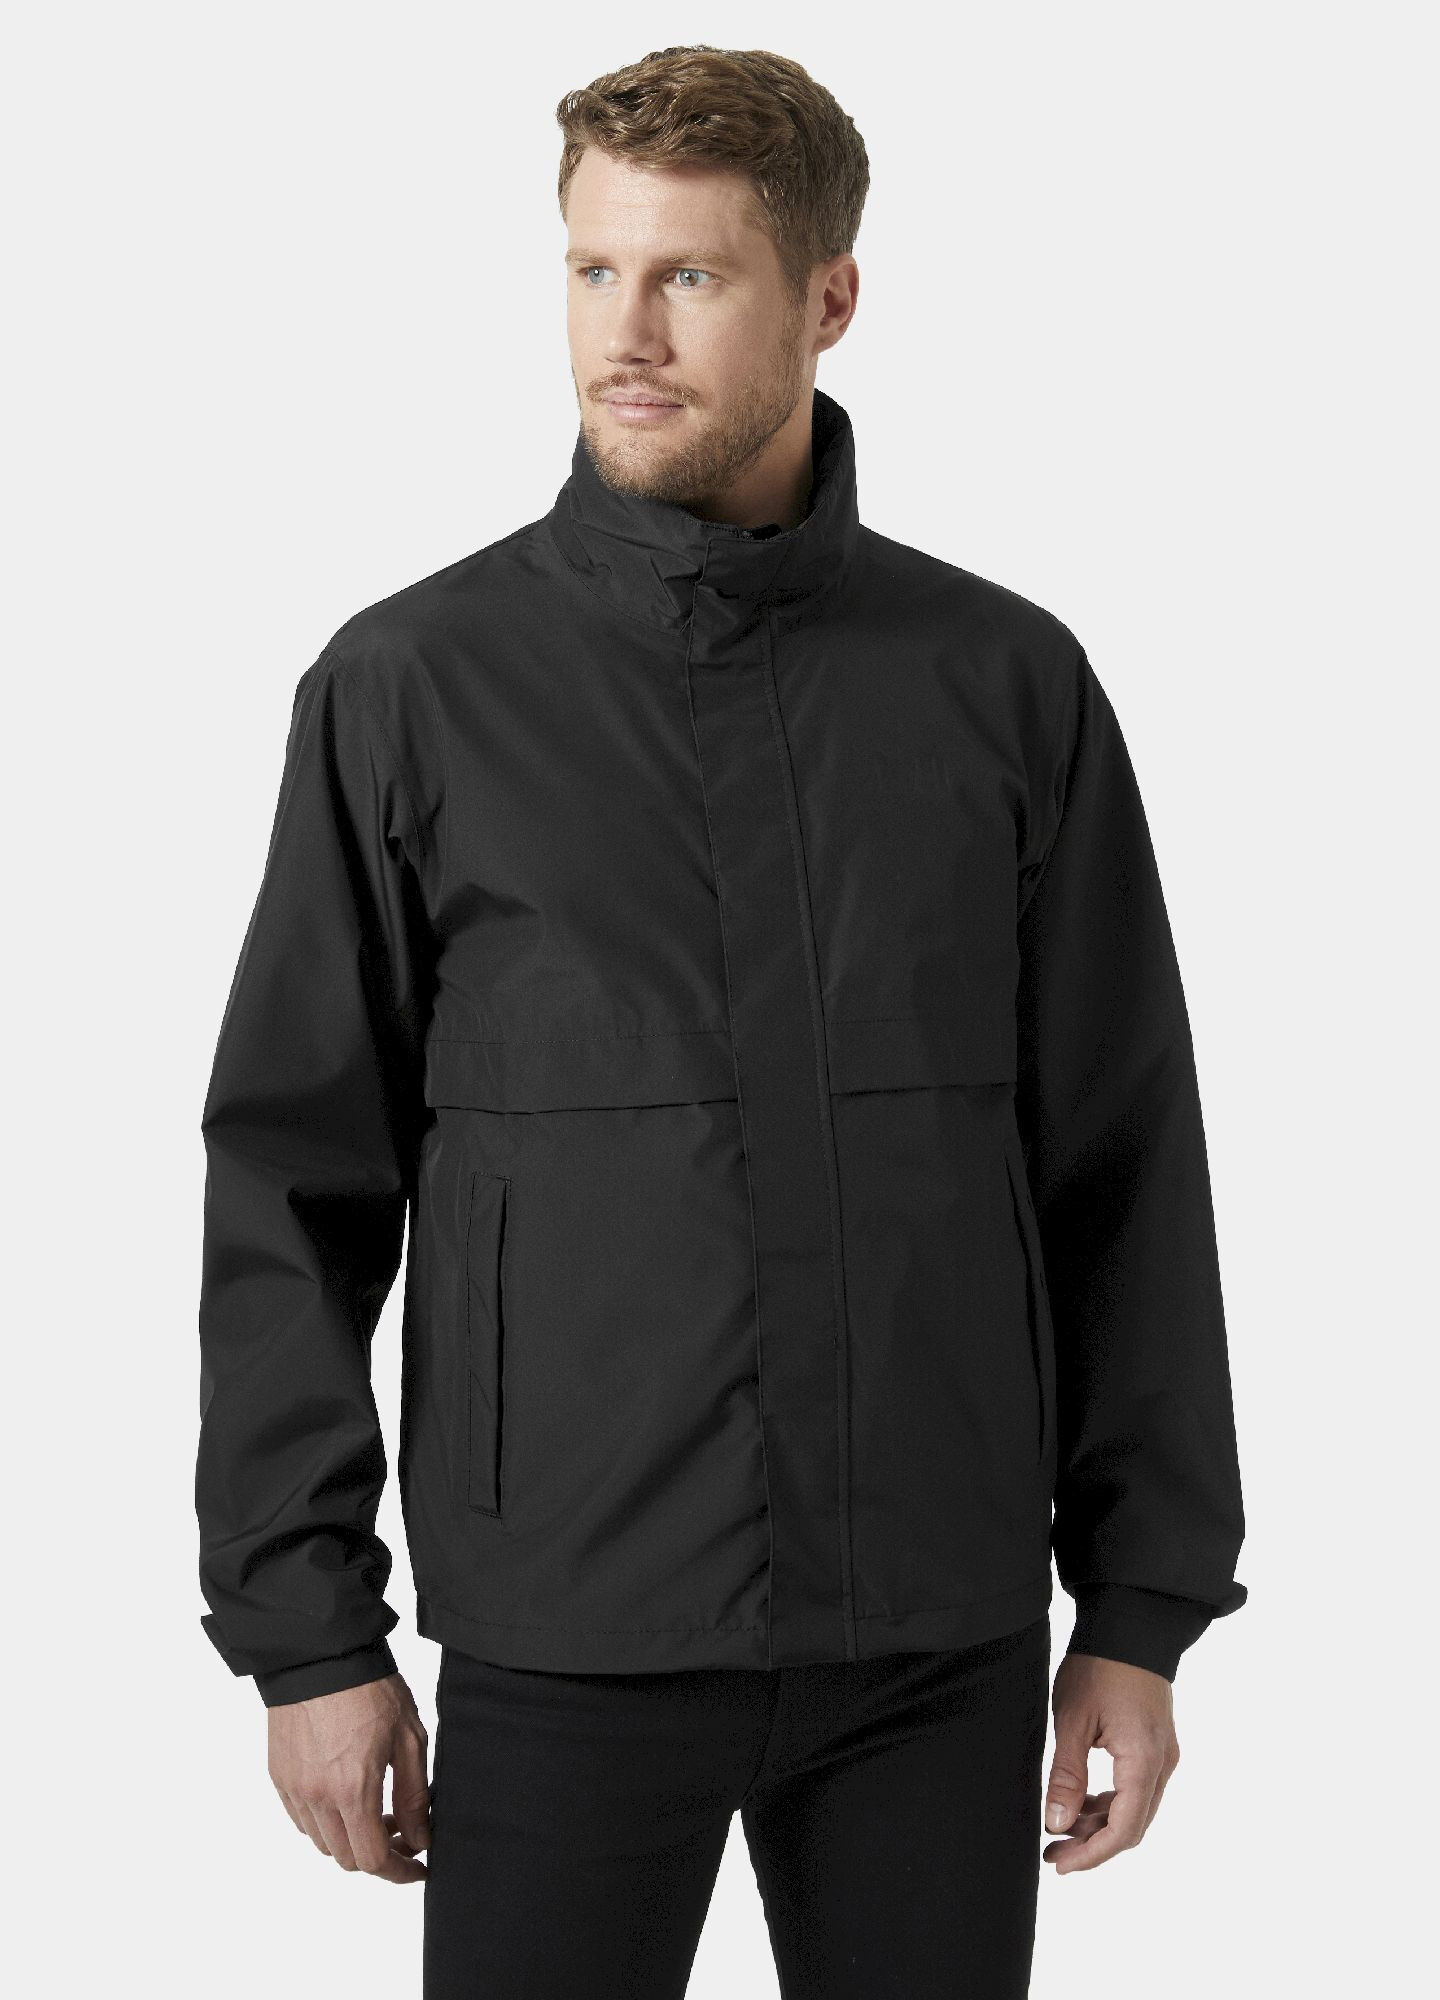 Helly Hansen T2 Rain Jacket - Waterproof jacket - Men's | Hardloop